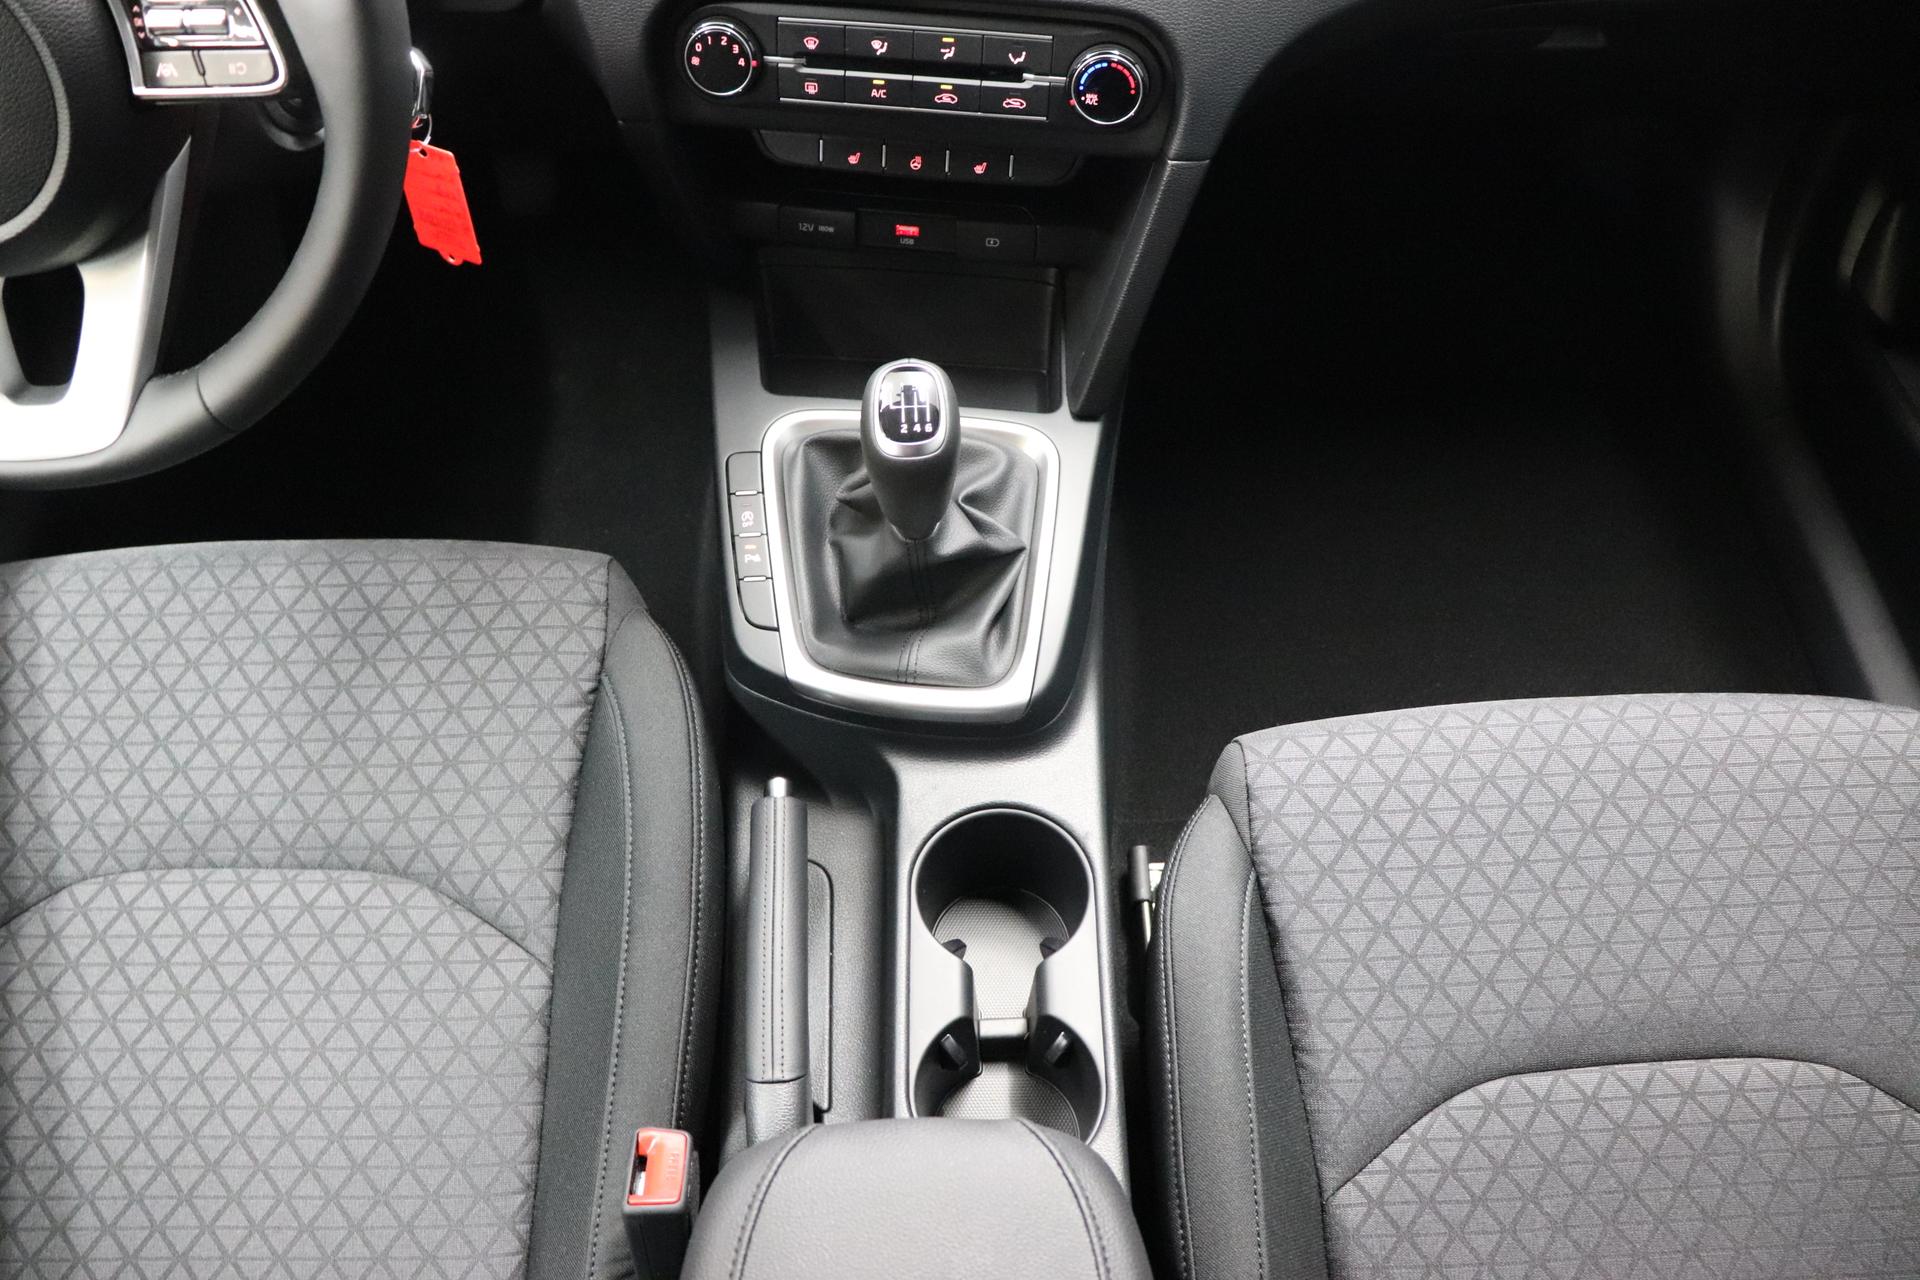 Kia Ceed Sportswagon Silver 1.0 T-GDI 74 kW (101 PS) Klimaanlage, Radio, DAB,  Sitzheizung, Lenkradheizung, Bluetooth, Freisprecheinrichtung, Lichtsensor, Einparkhilfe  hinten, Tempomat, Frontkolisionswarner, Spurfolgeassistent, uvm.